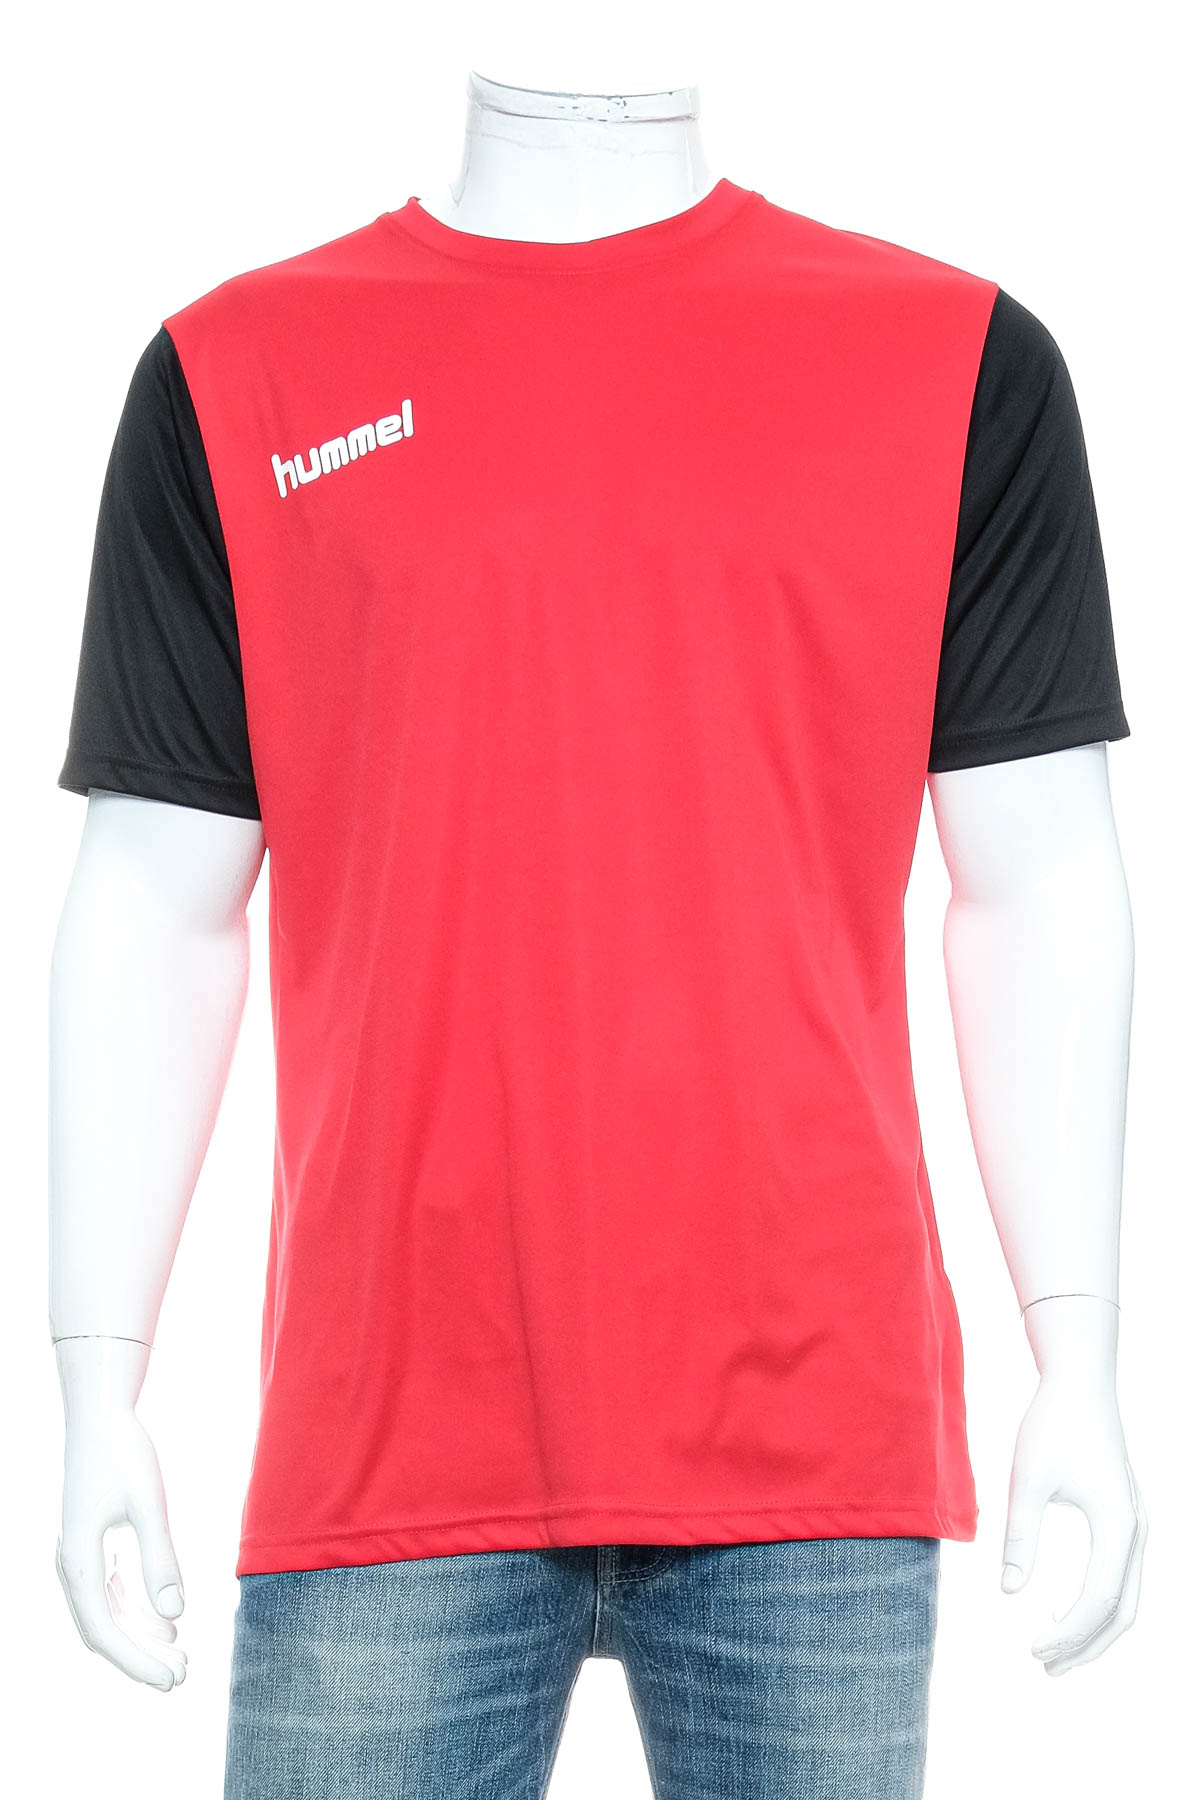 Men's T-shirt - Hummel - 0